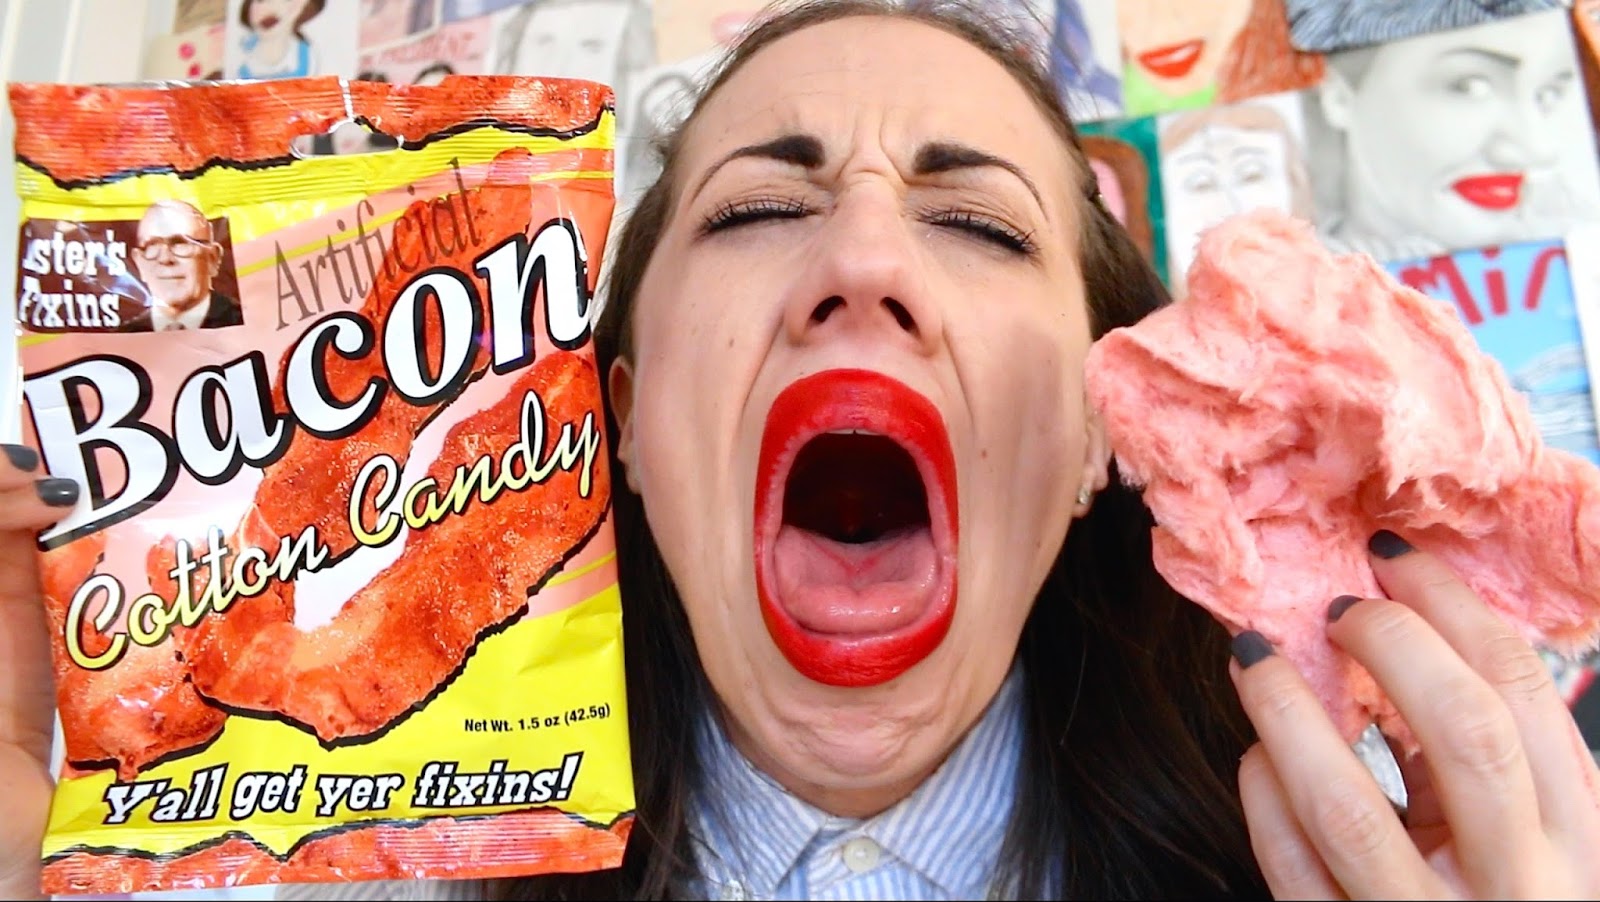 Miranda Sings, comiendo caramelos de bacon en su canal de Youtube